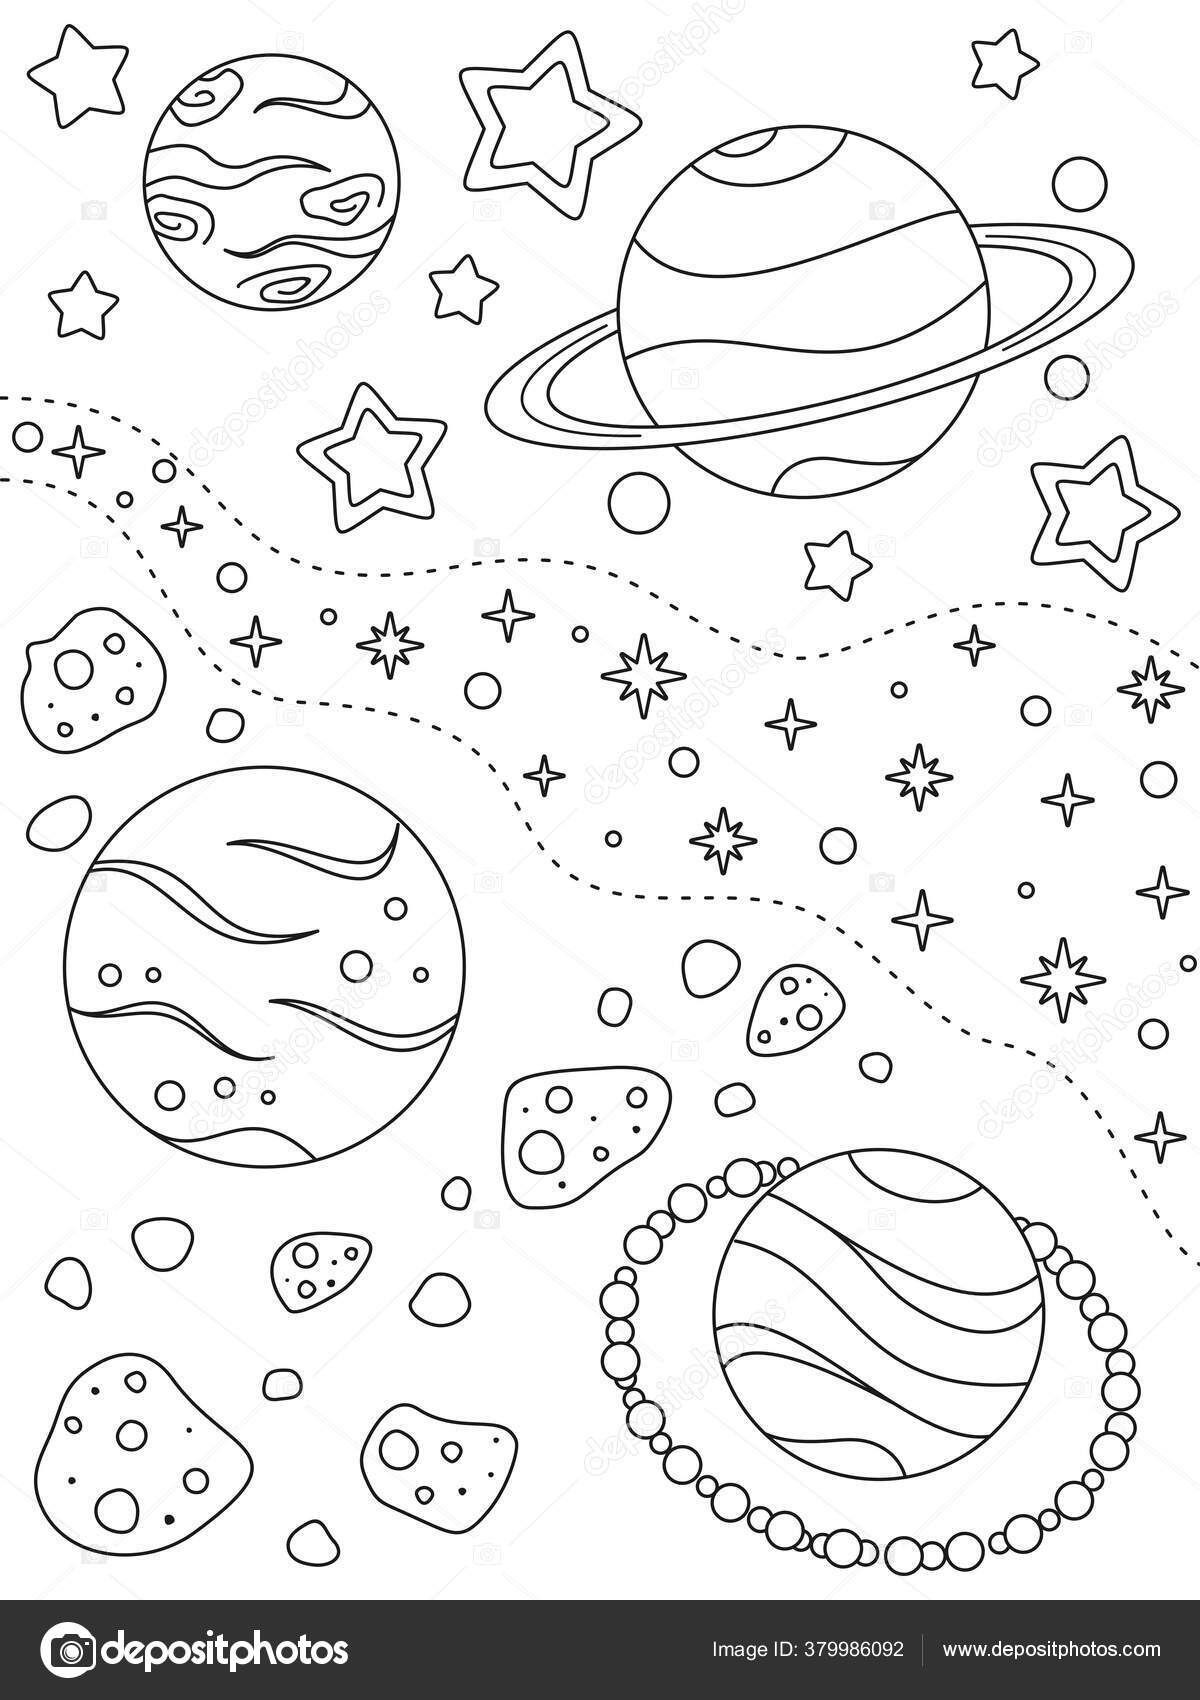 Dibujo para colorear con diferentes planetas asteroides nebulosas estrellas elementos vector de stock por mysticamailru